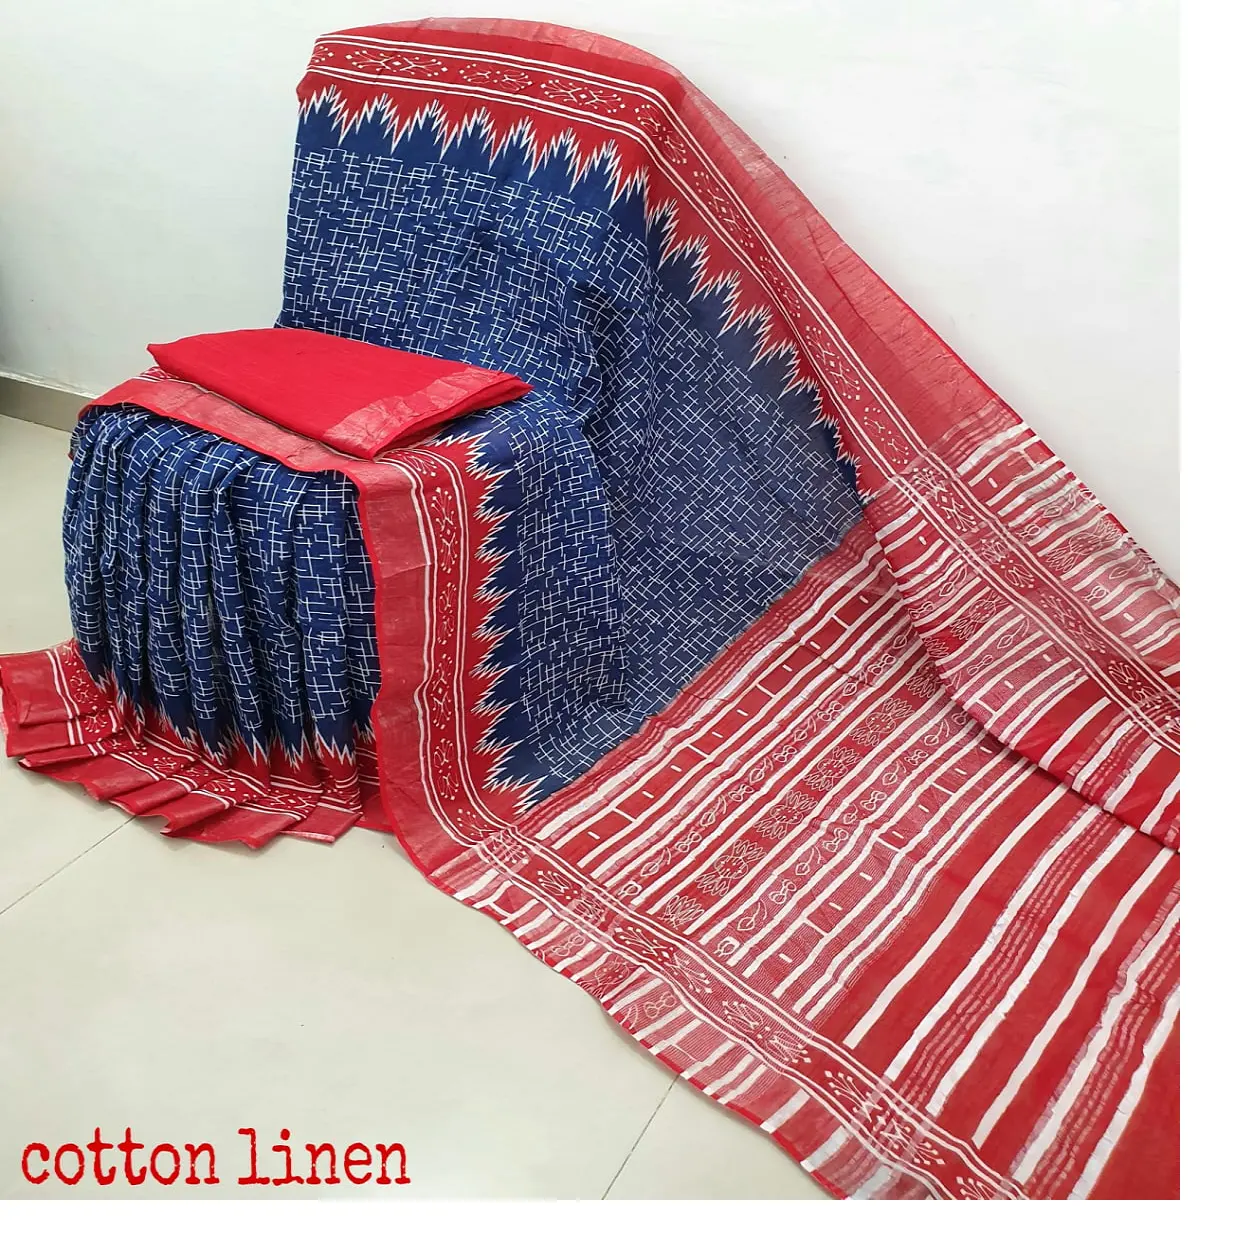 Sari di lino alla moda e autentici su misura con camicetta in coloranti naturali per donna in combinazione di colore rosso e blu